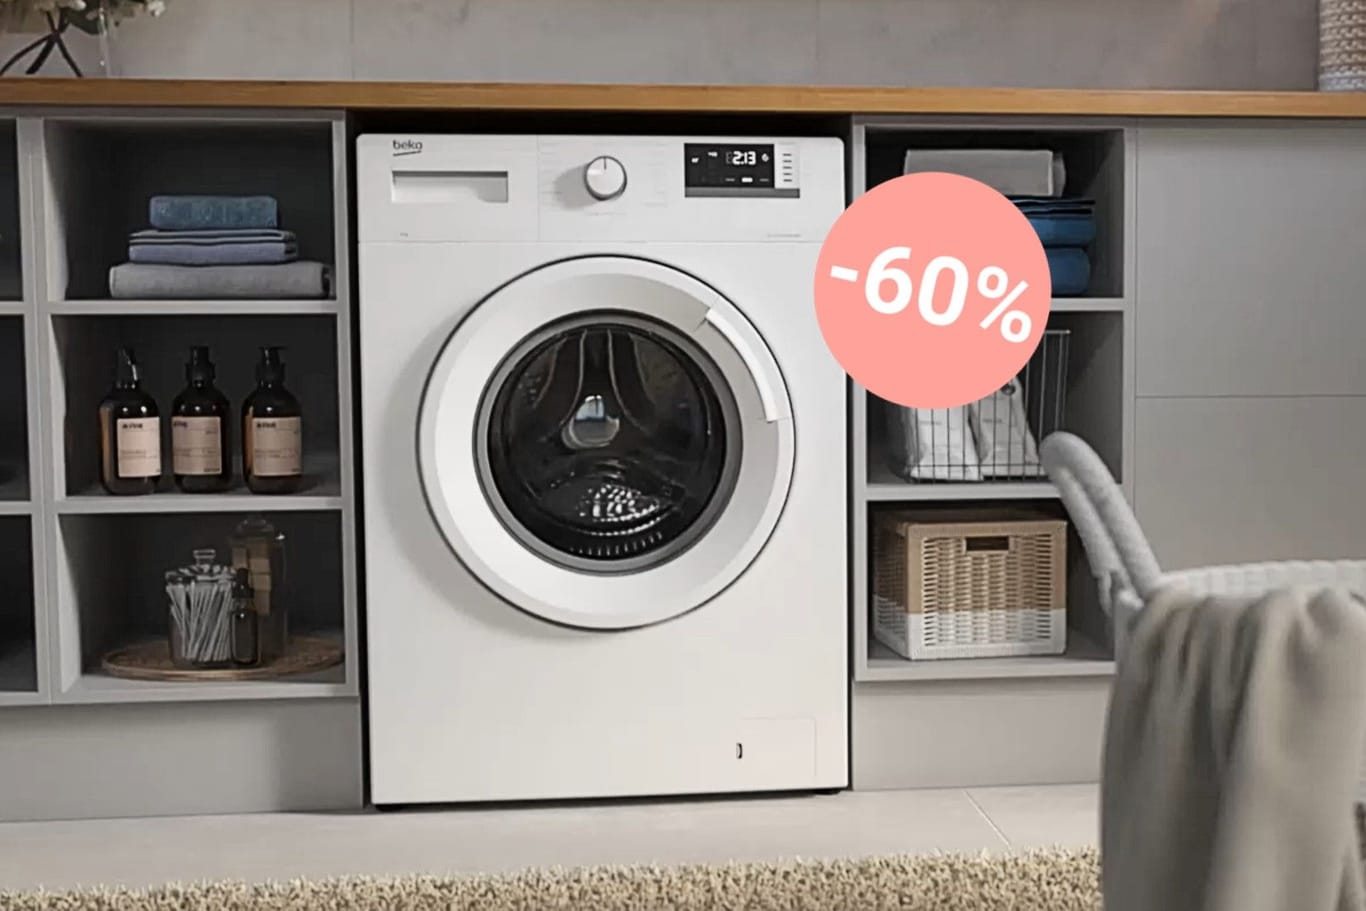 Heute können Sie richtig sparen: Die Beko-Waschmaschine ist jetzt für unter 300 Euro im Aldi-Onlineshop erhältlich.